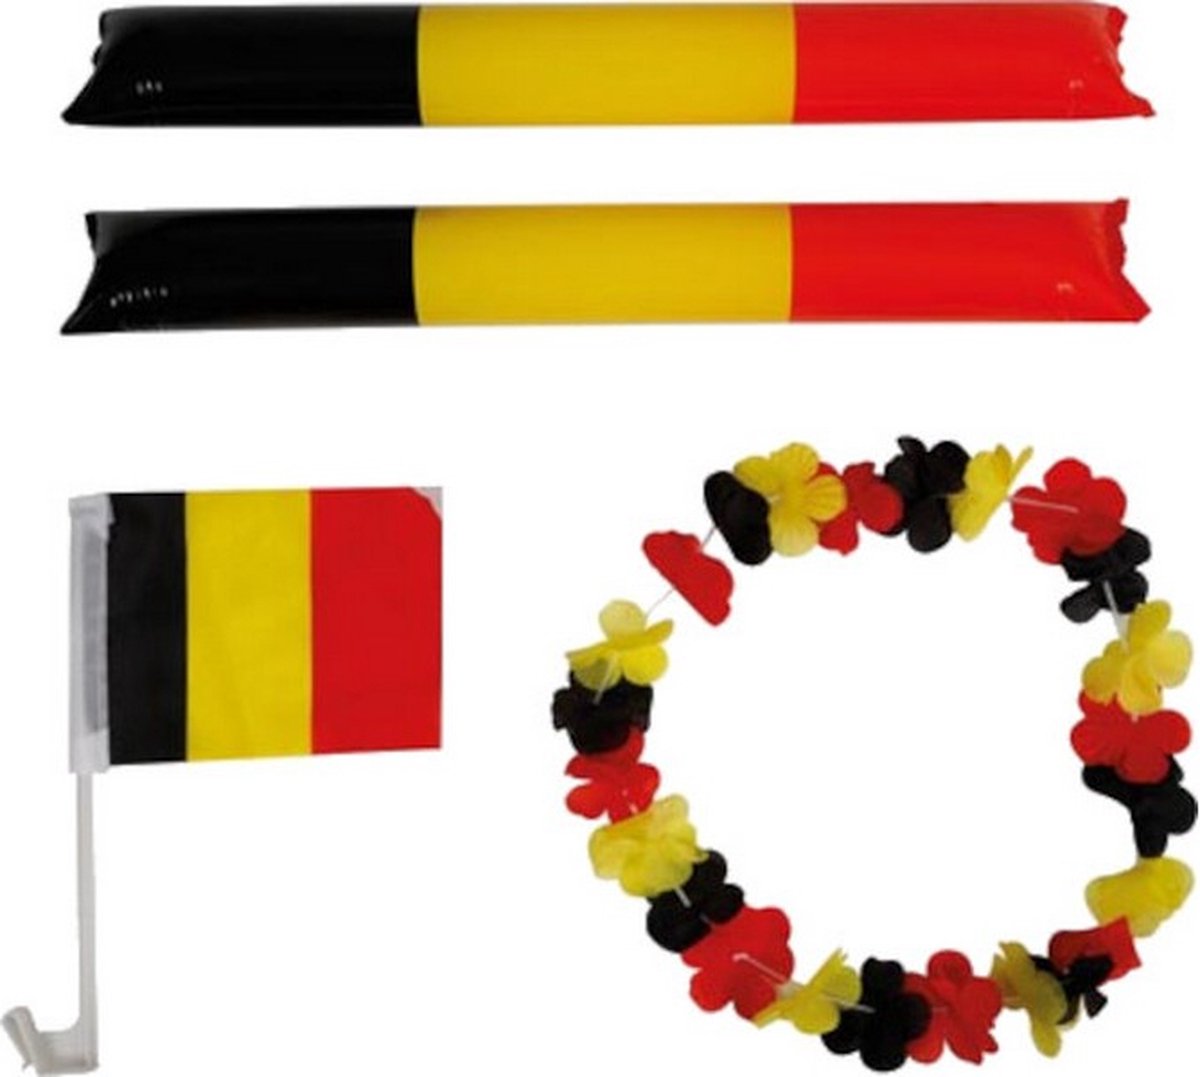 supporterskit Belgi√É¬´ PVC zwart/geel/rood 4-delig